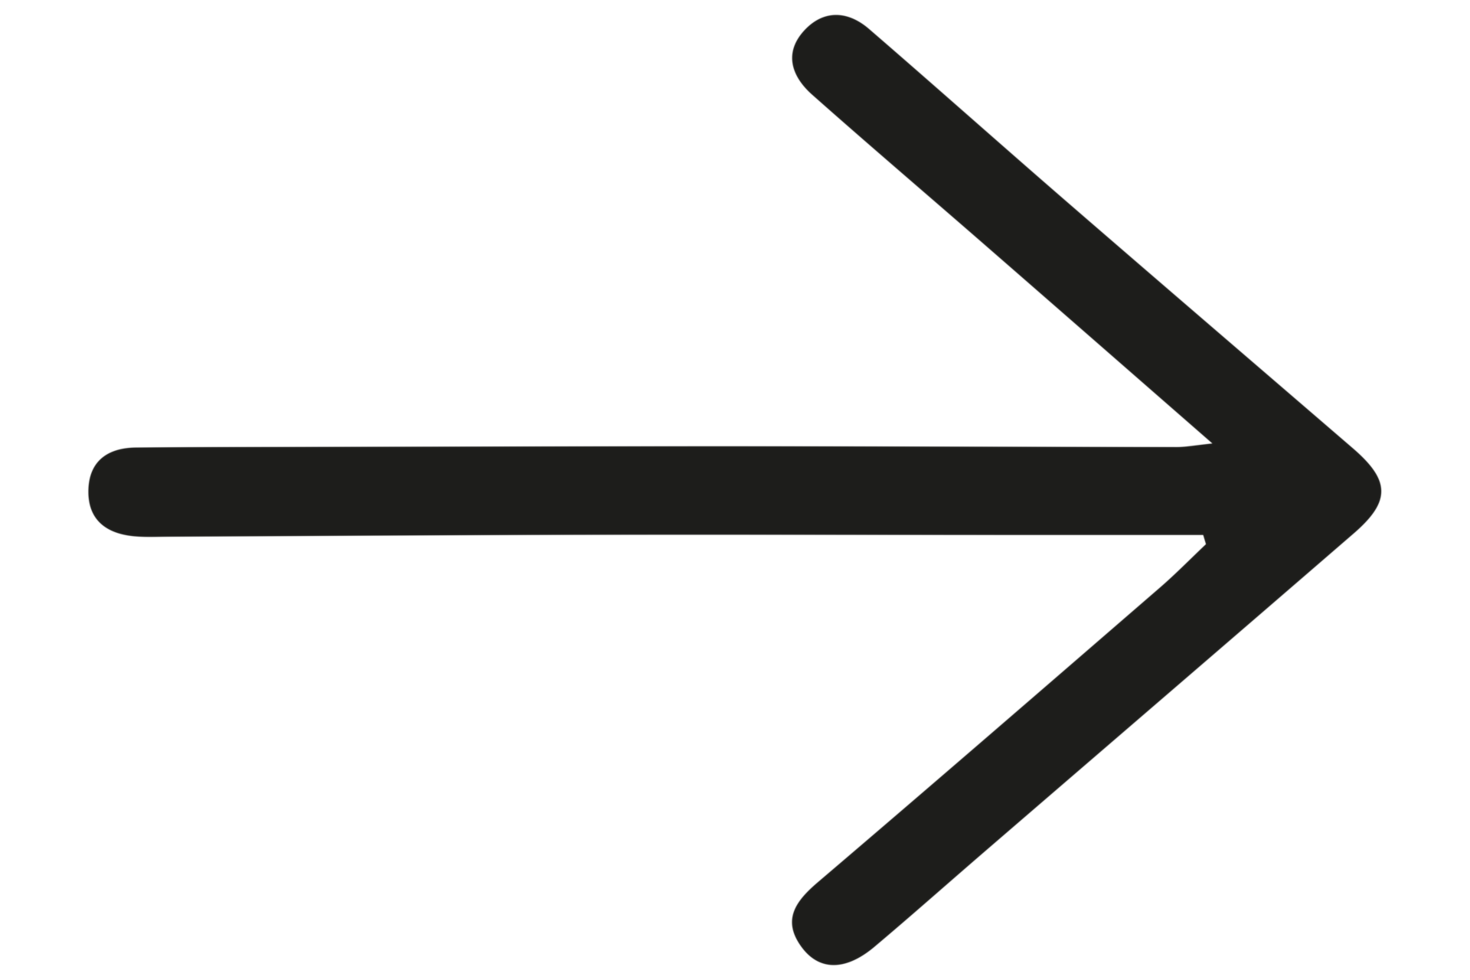 rechtes Pfeilsymbol png auf transparentem Hintergrund